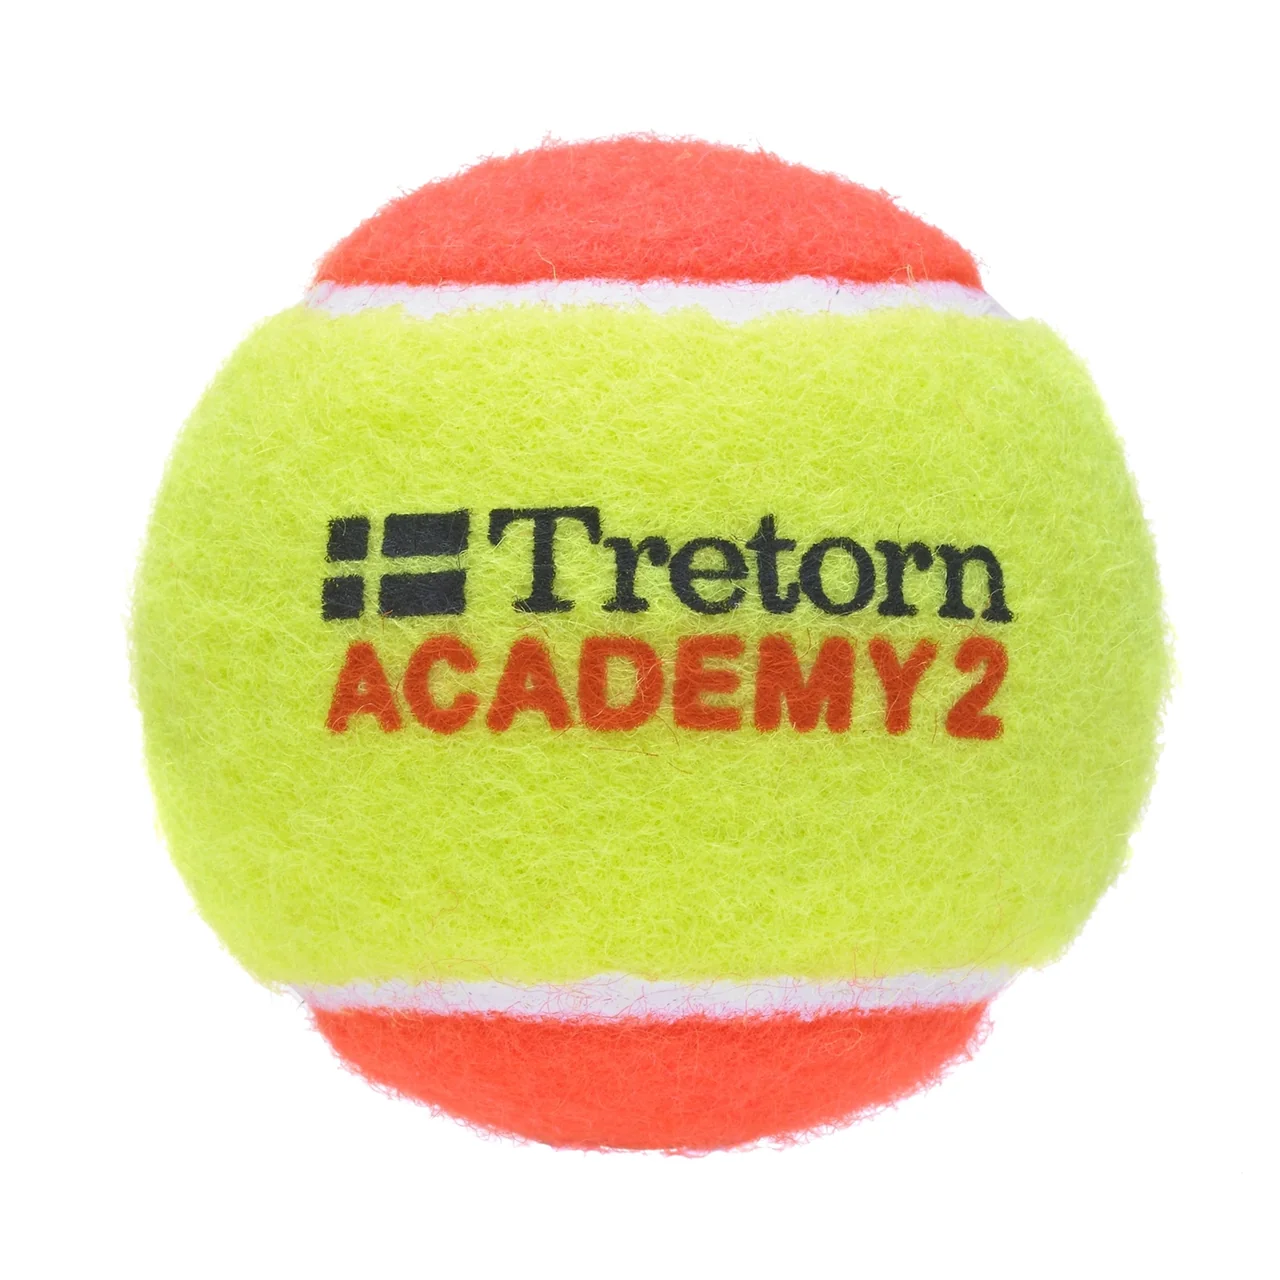 Tretorn Academy Stage 2. 72 baller